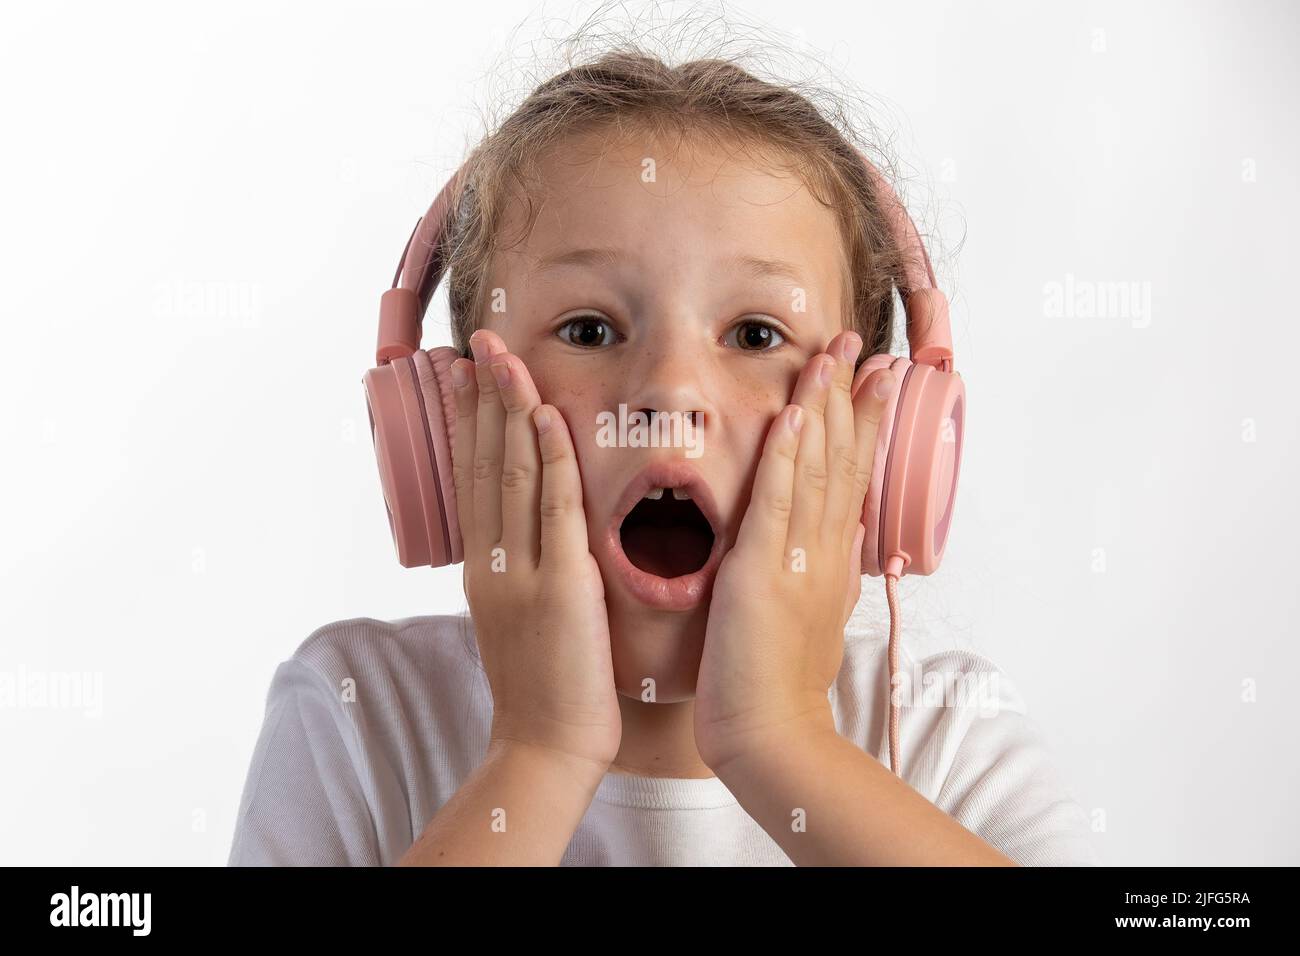 Nahaufnahme eines jungen Mädchens mit rosa Kopfhörern, das Musik hört und überrascht ist, während es direkt in die Kamera schaut Stockfoto